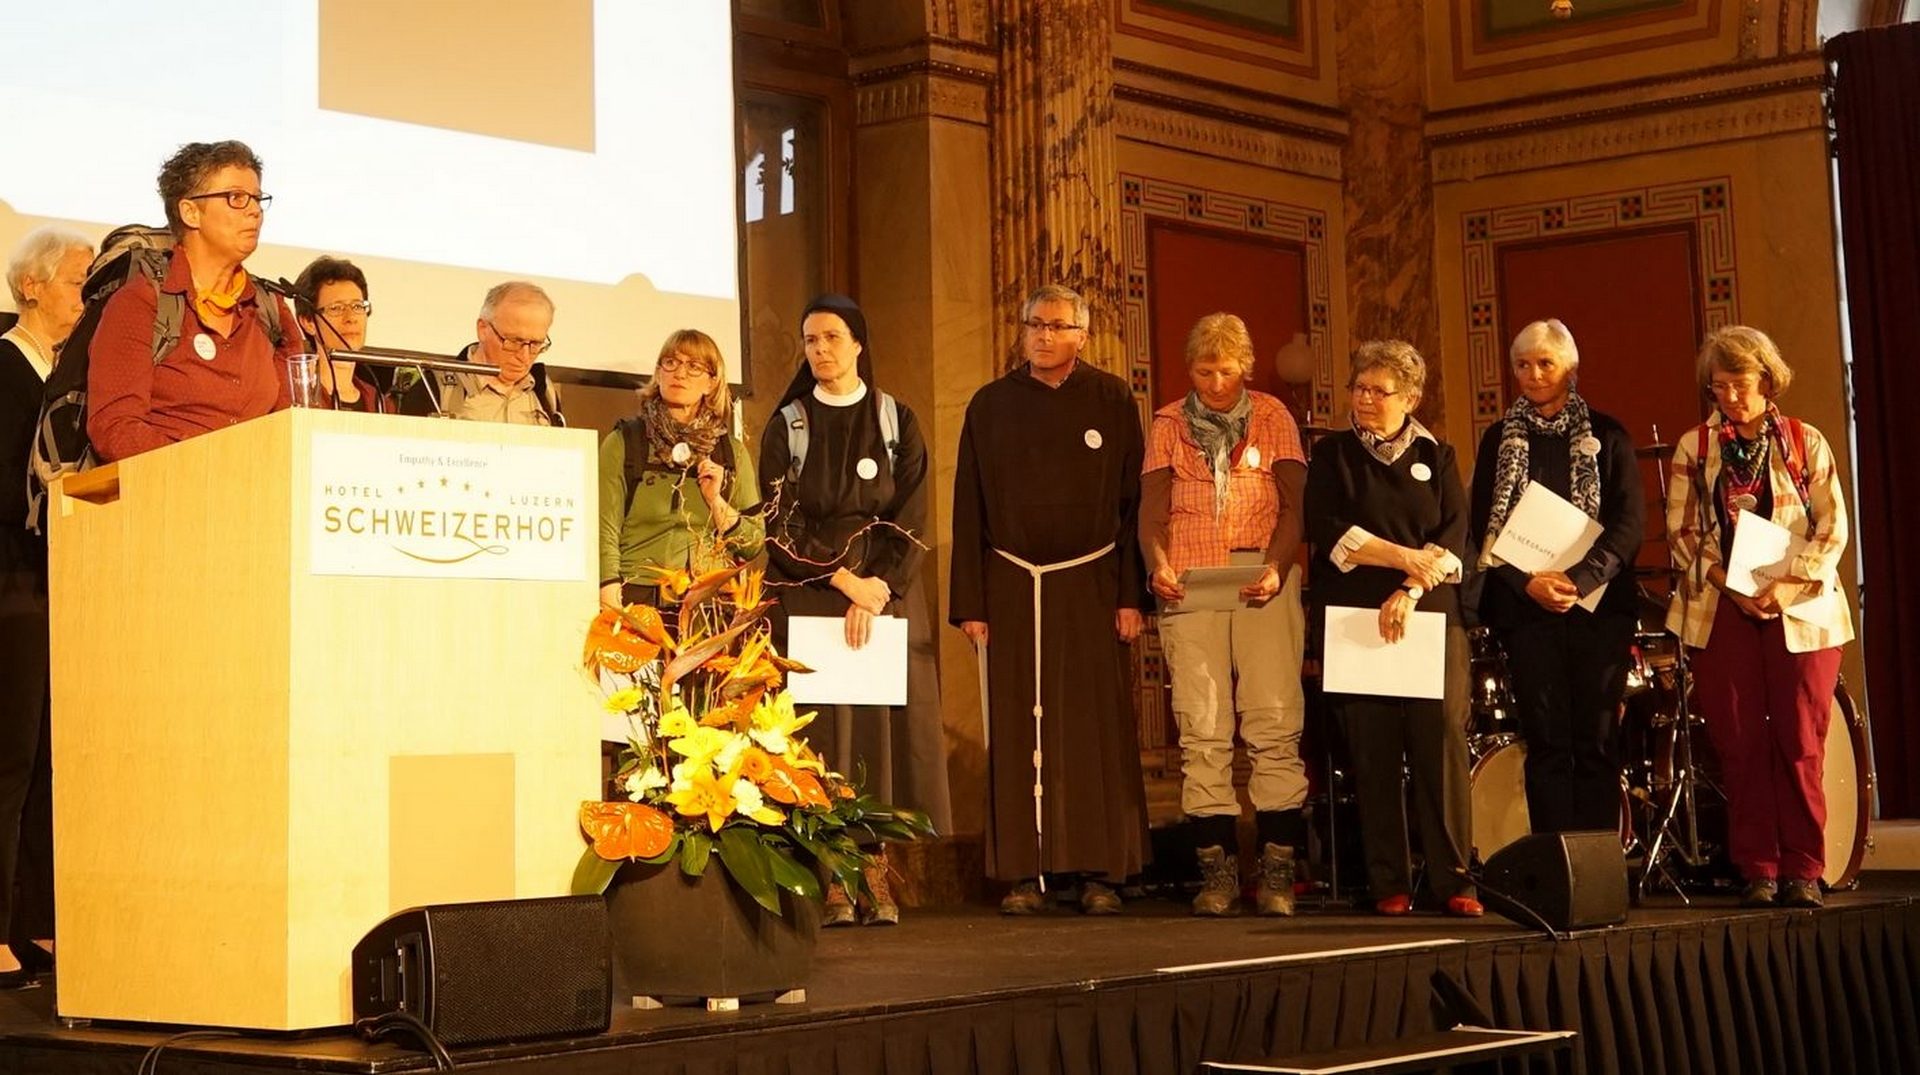 La marche 'L'Eglise avec les femmes' reçoit le prix Herbert Haag 2017 (photo Fondation Herbert Haag)